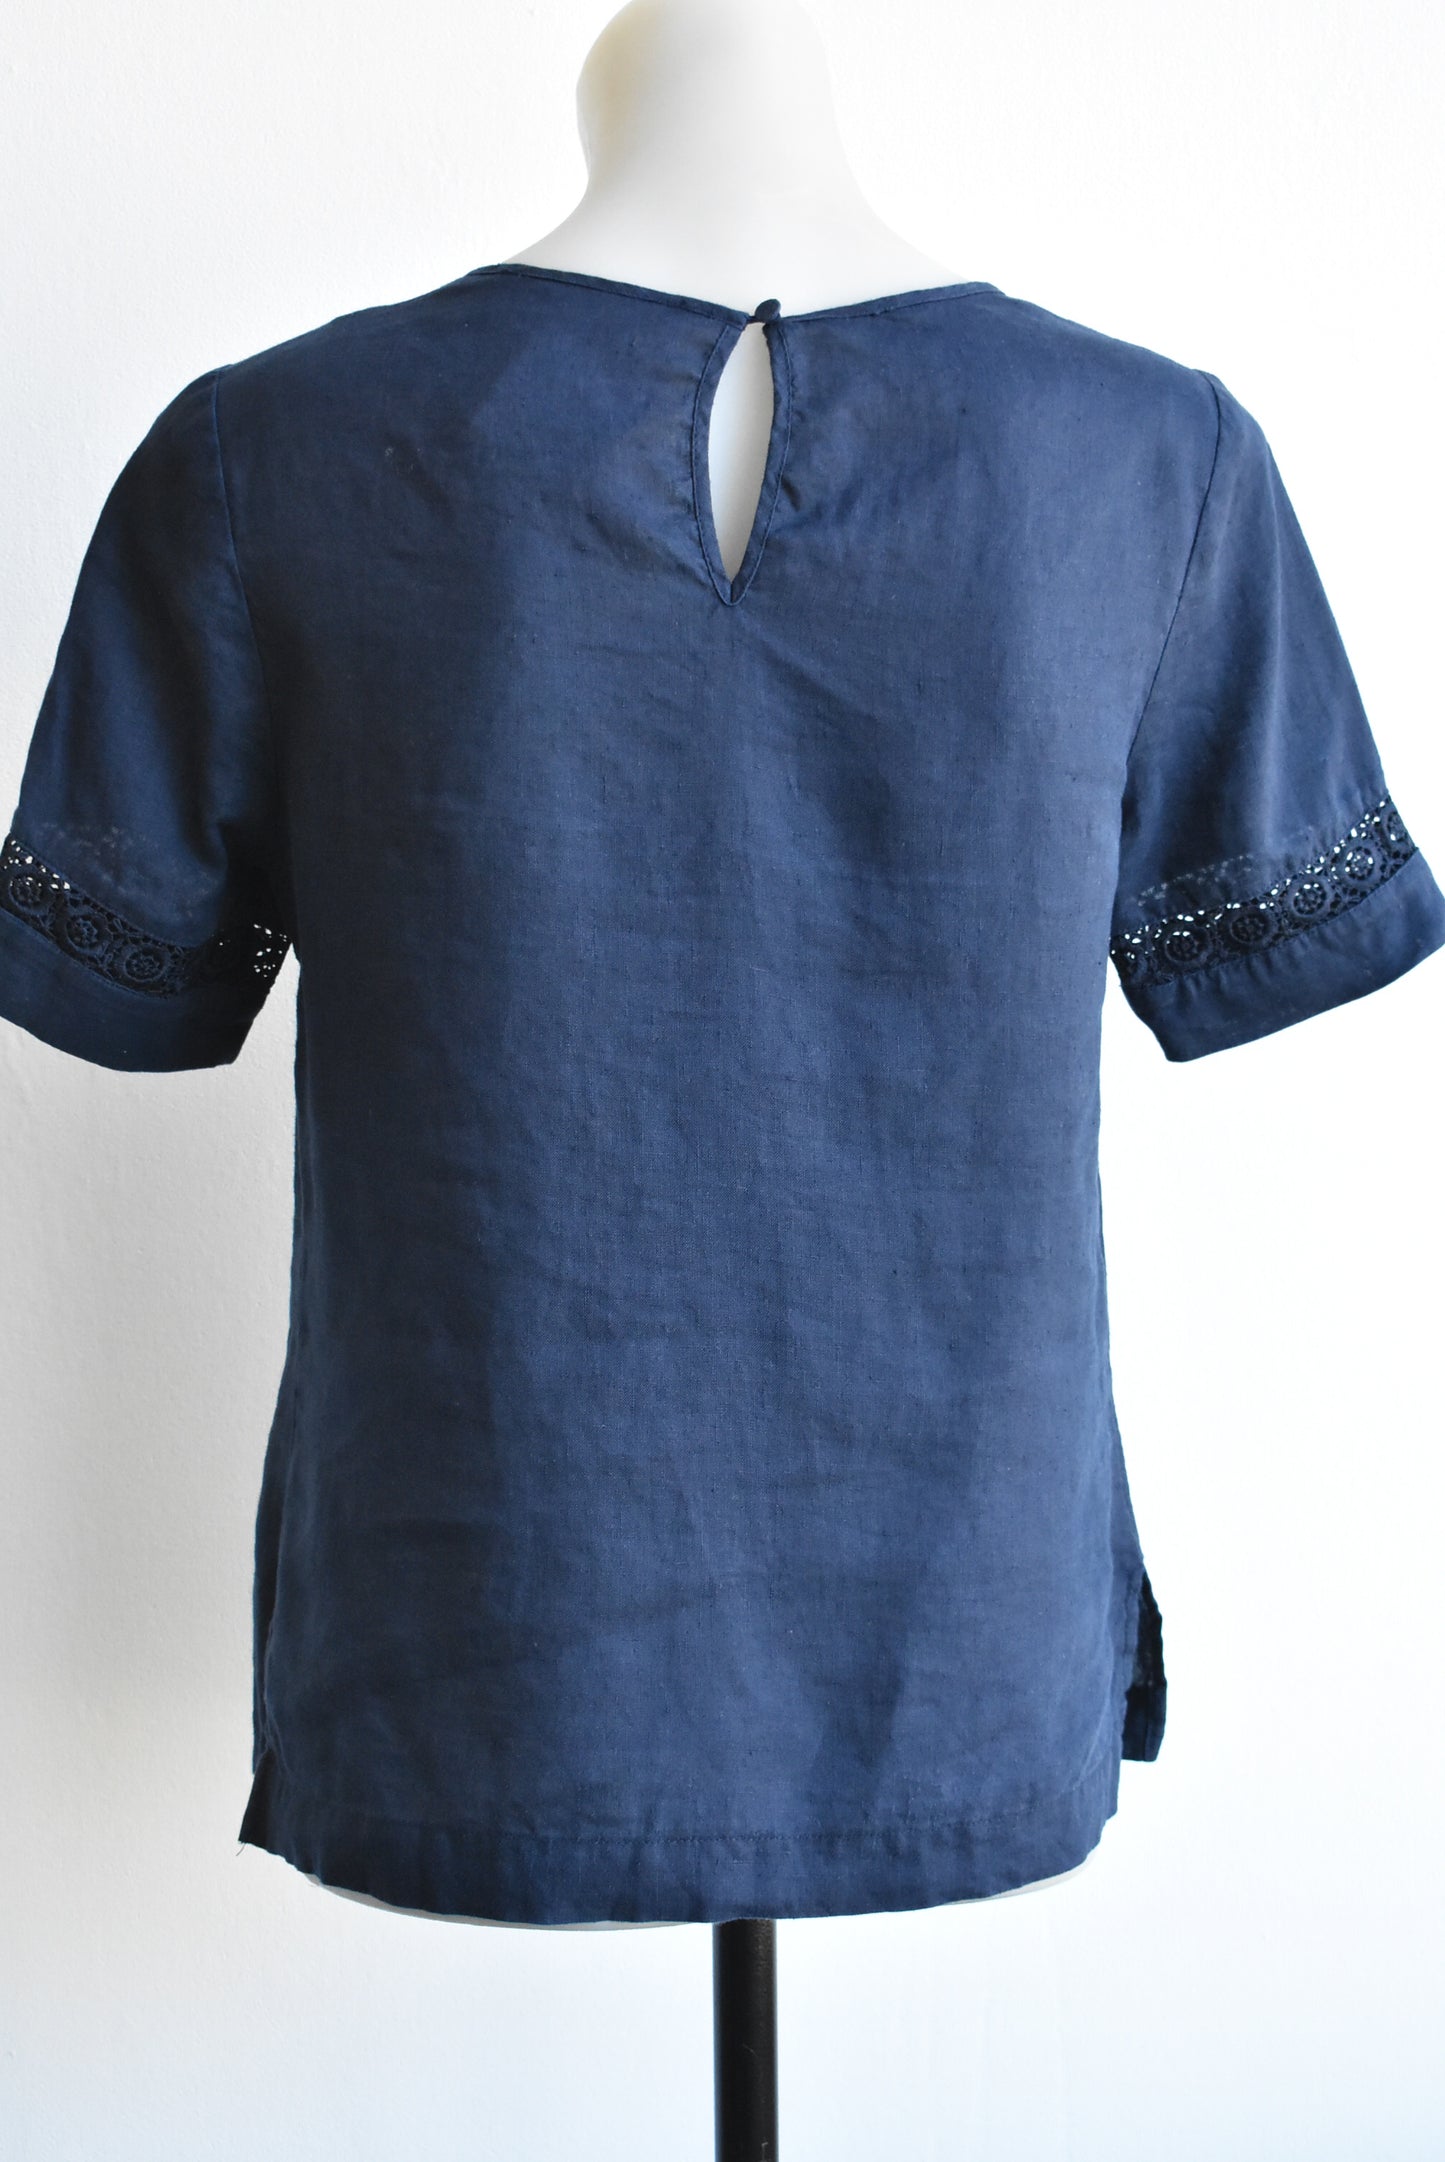 Jacqui E blue linen lace panel top, size 6